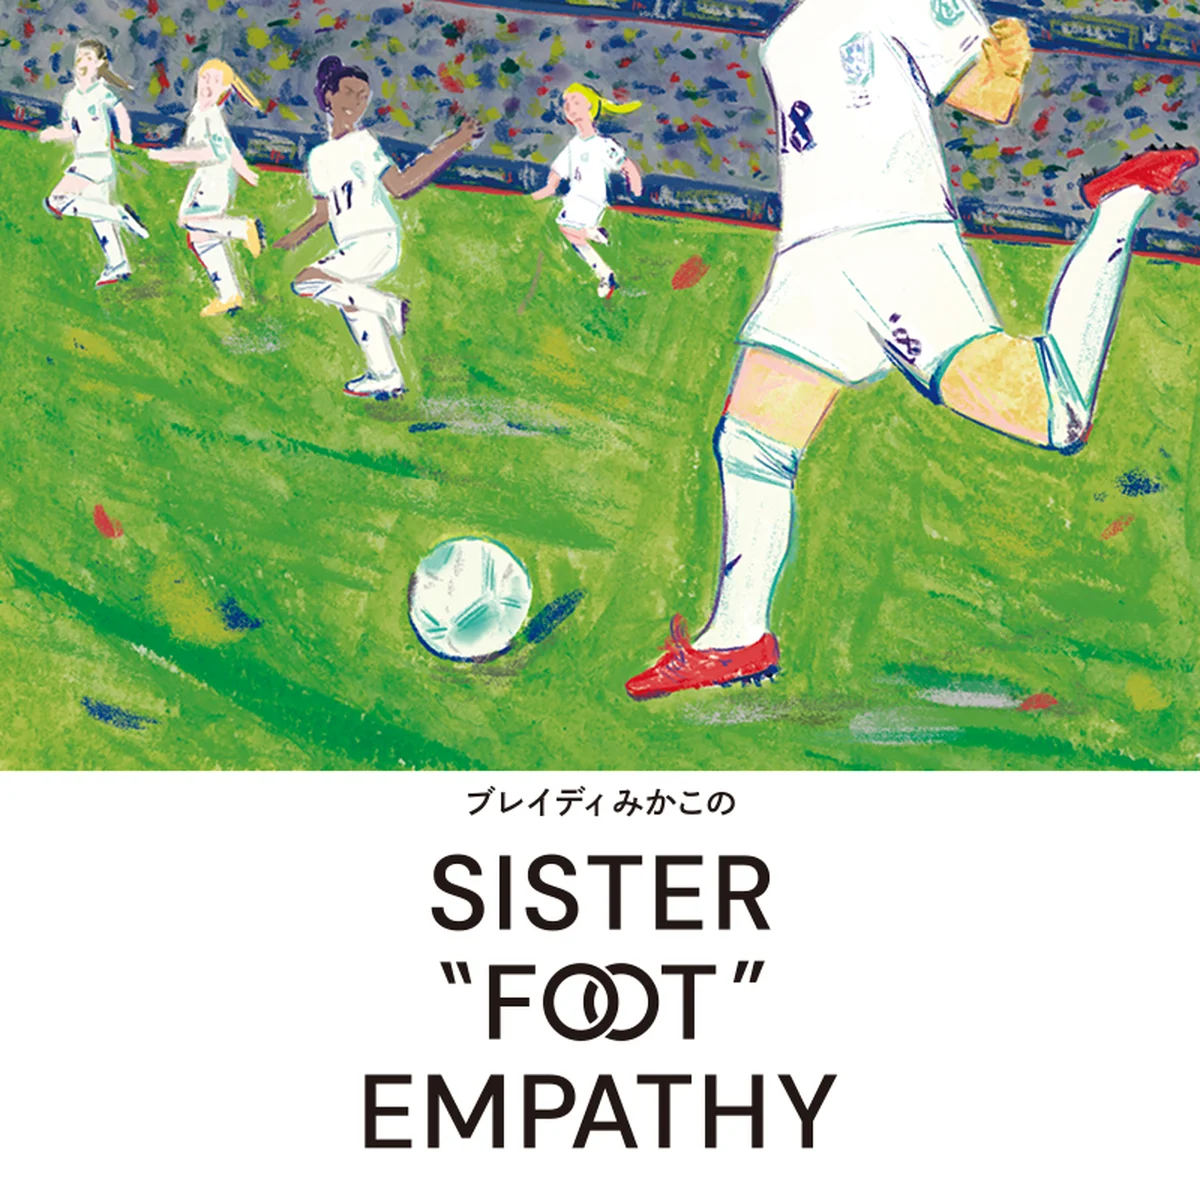 シスター「フット」な女子サッカーの歴史【ブレイディみかこのSISTER "FOOT" EMPATHY】